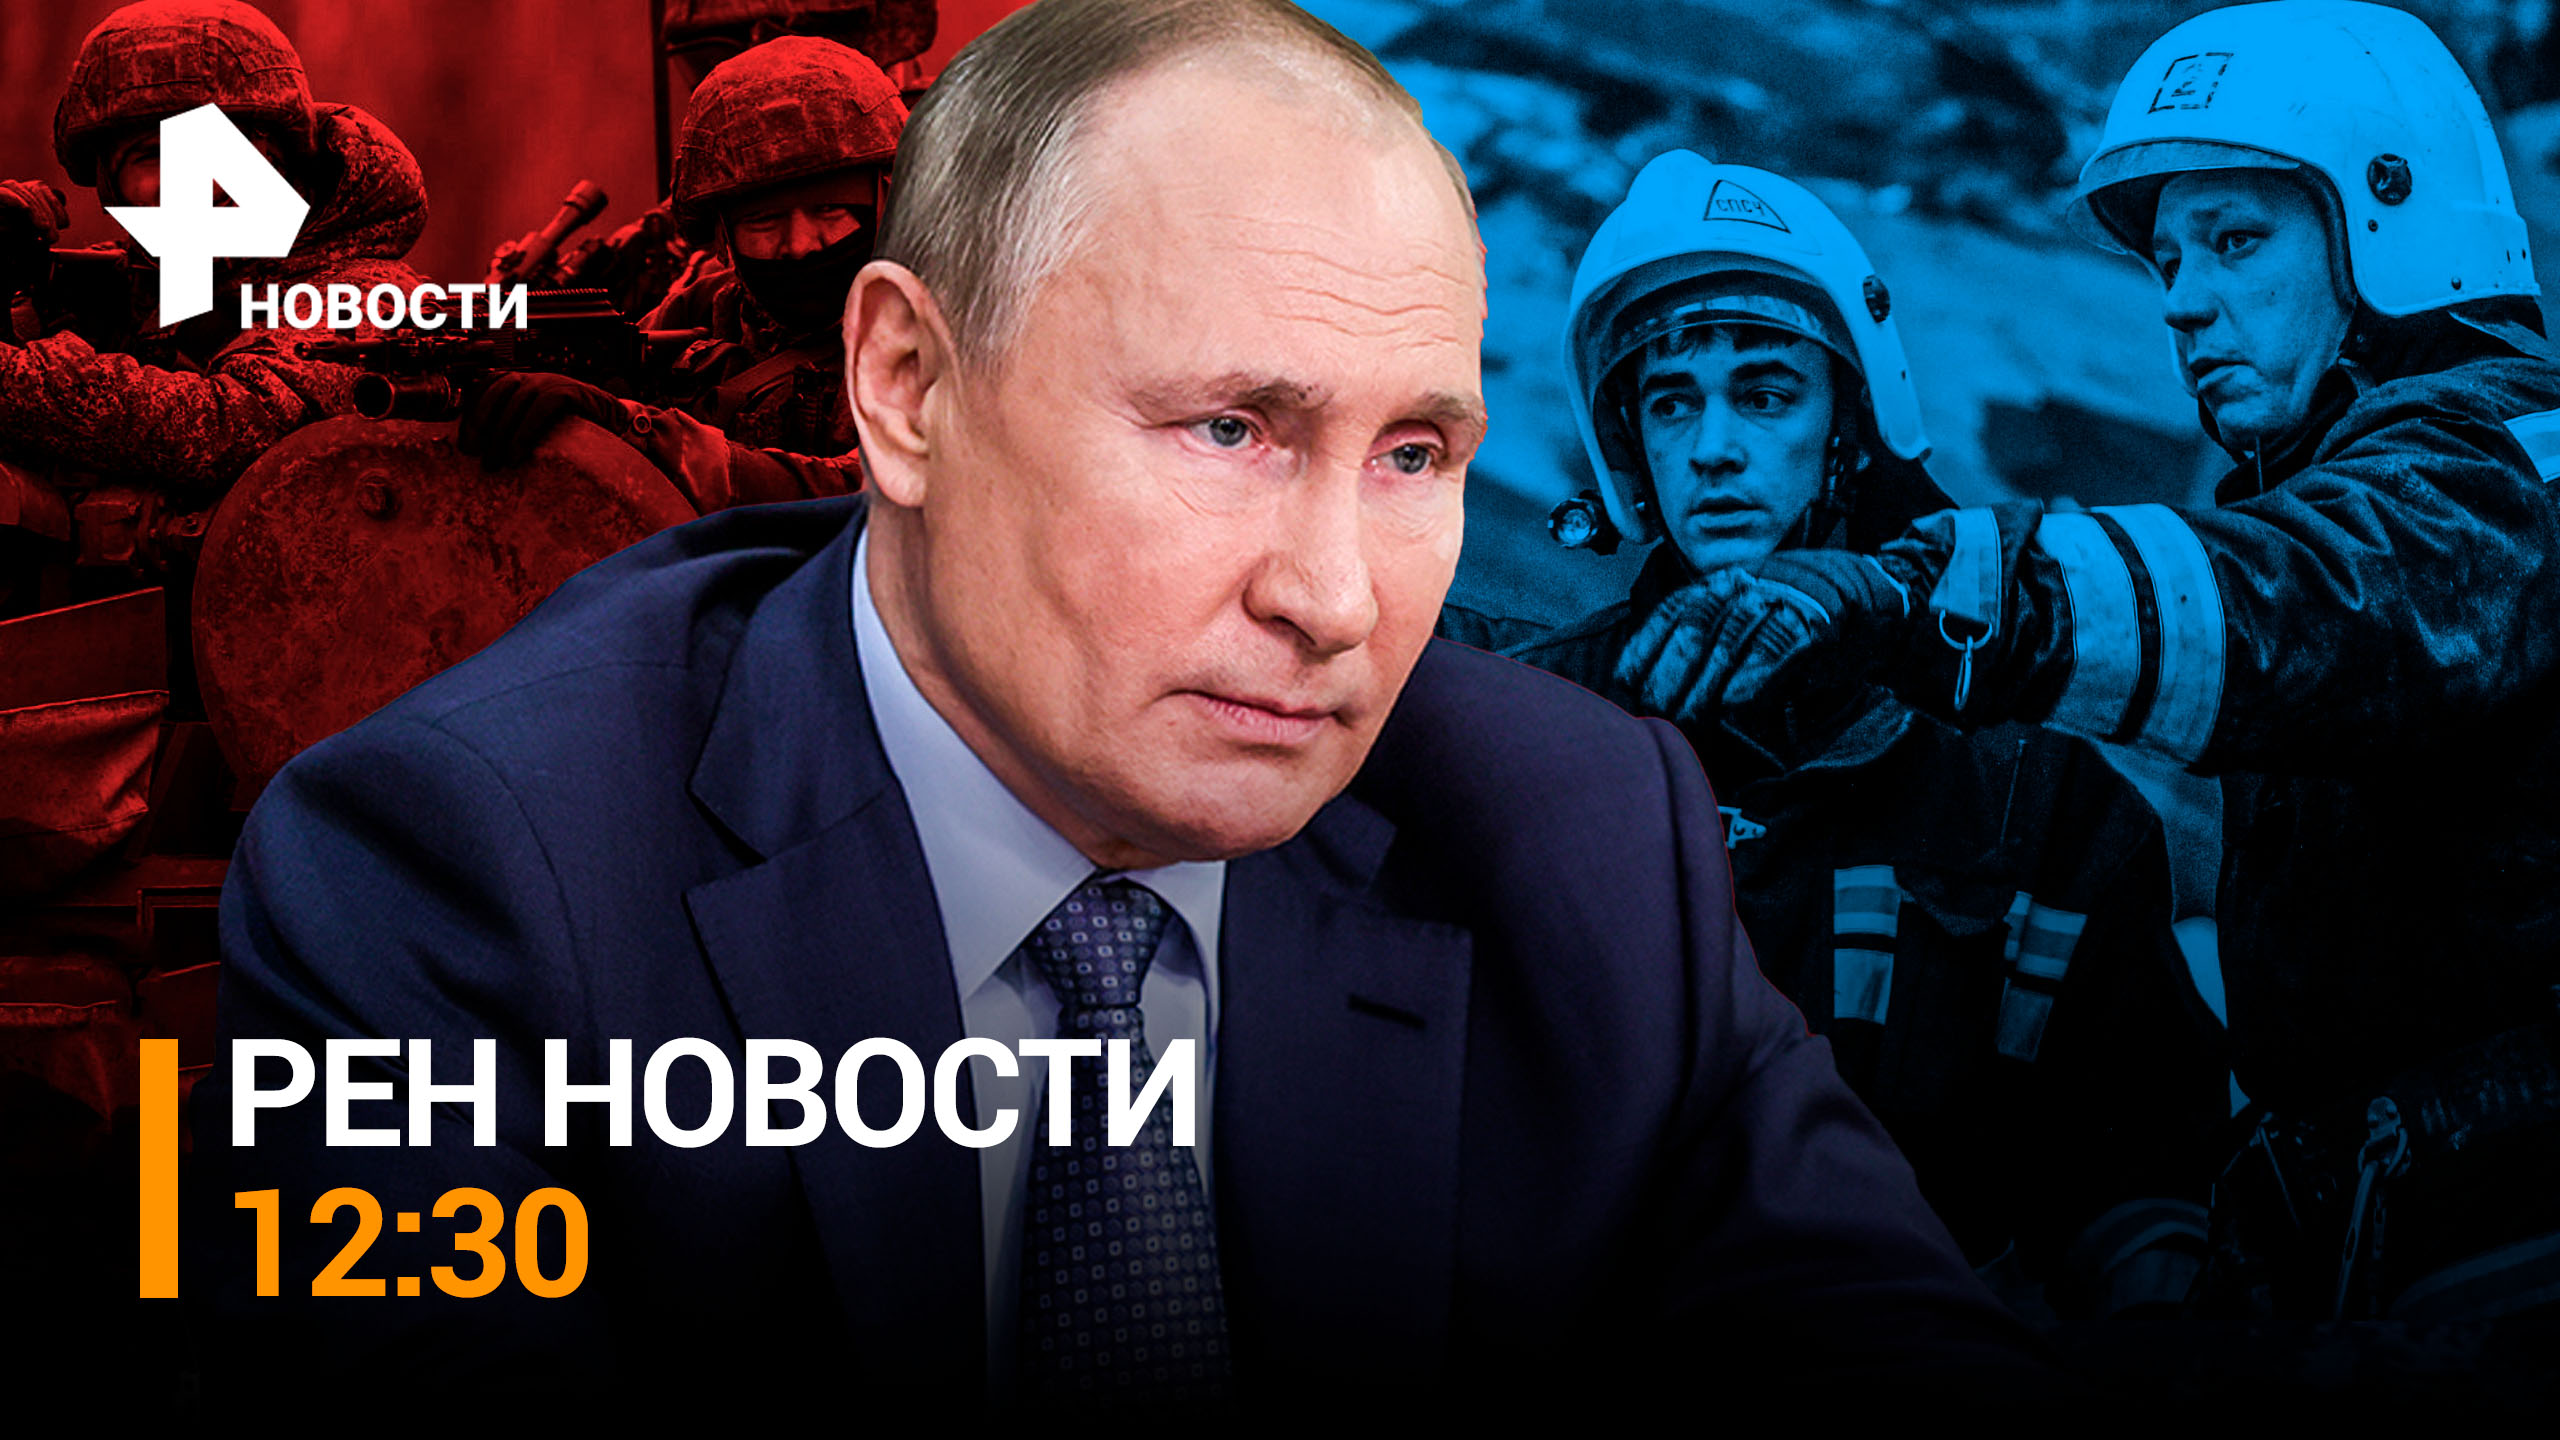 Путин встречается с доверенными лицами. Новые выплаты студентам / РЕН Новости 12:30, 20.03.24